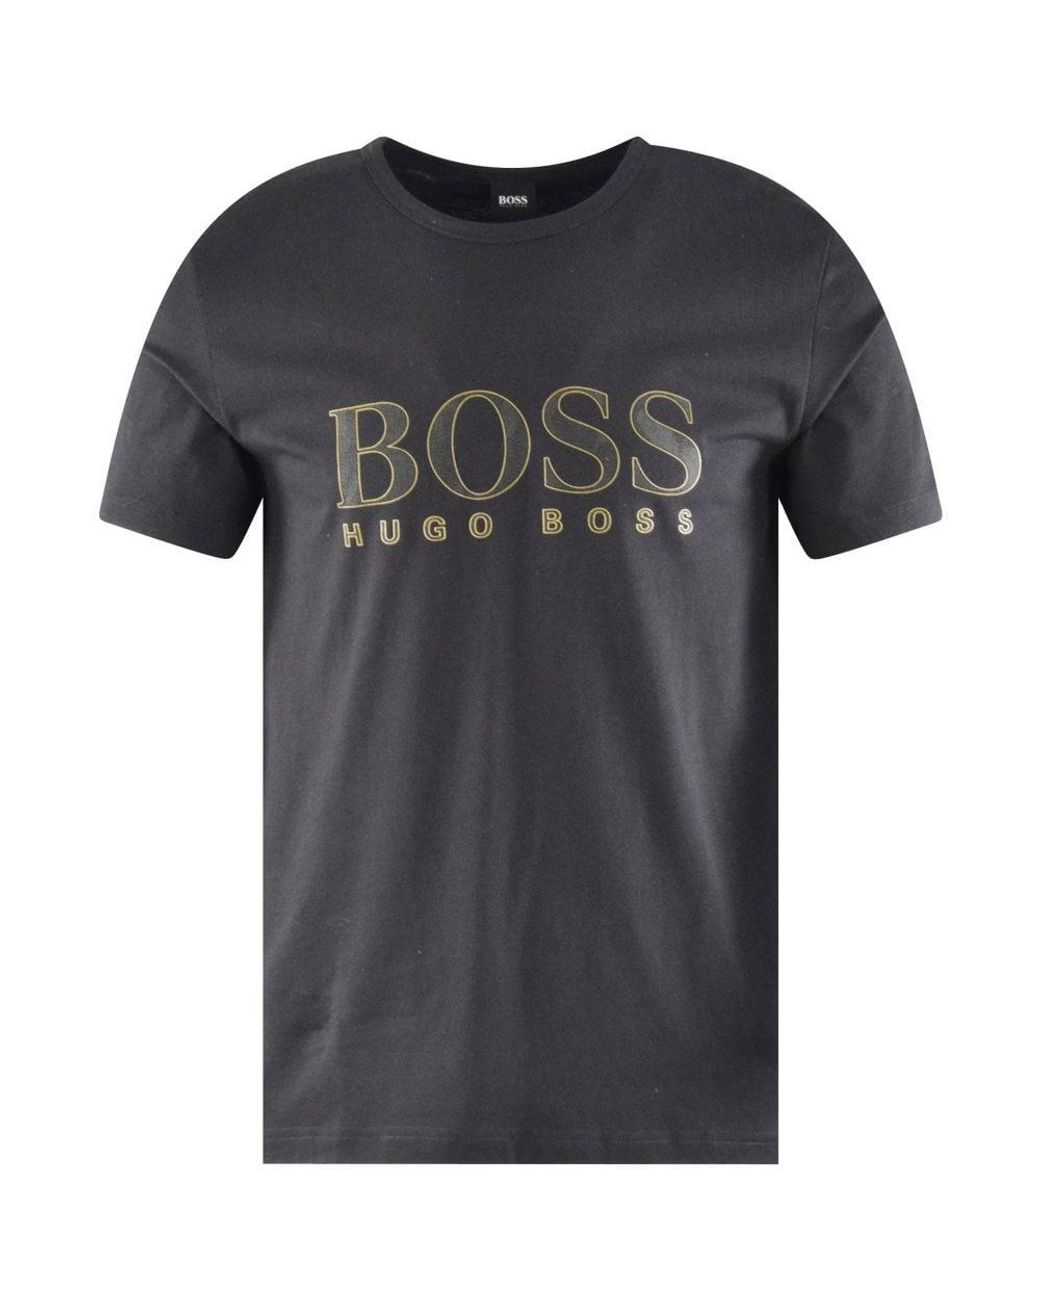 Hugo Boss Black And Gold Shirt Germany, SAVE 30% - eagleflair.com